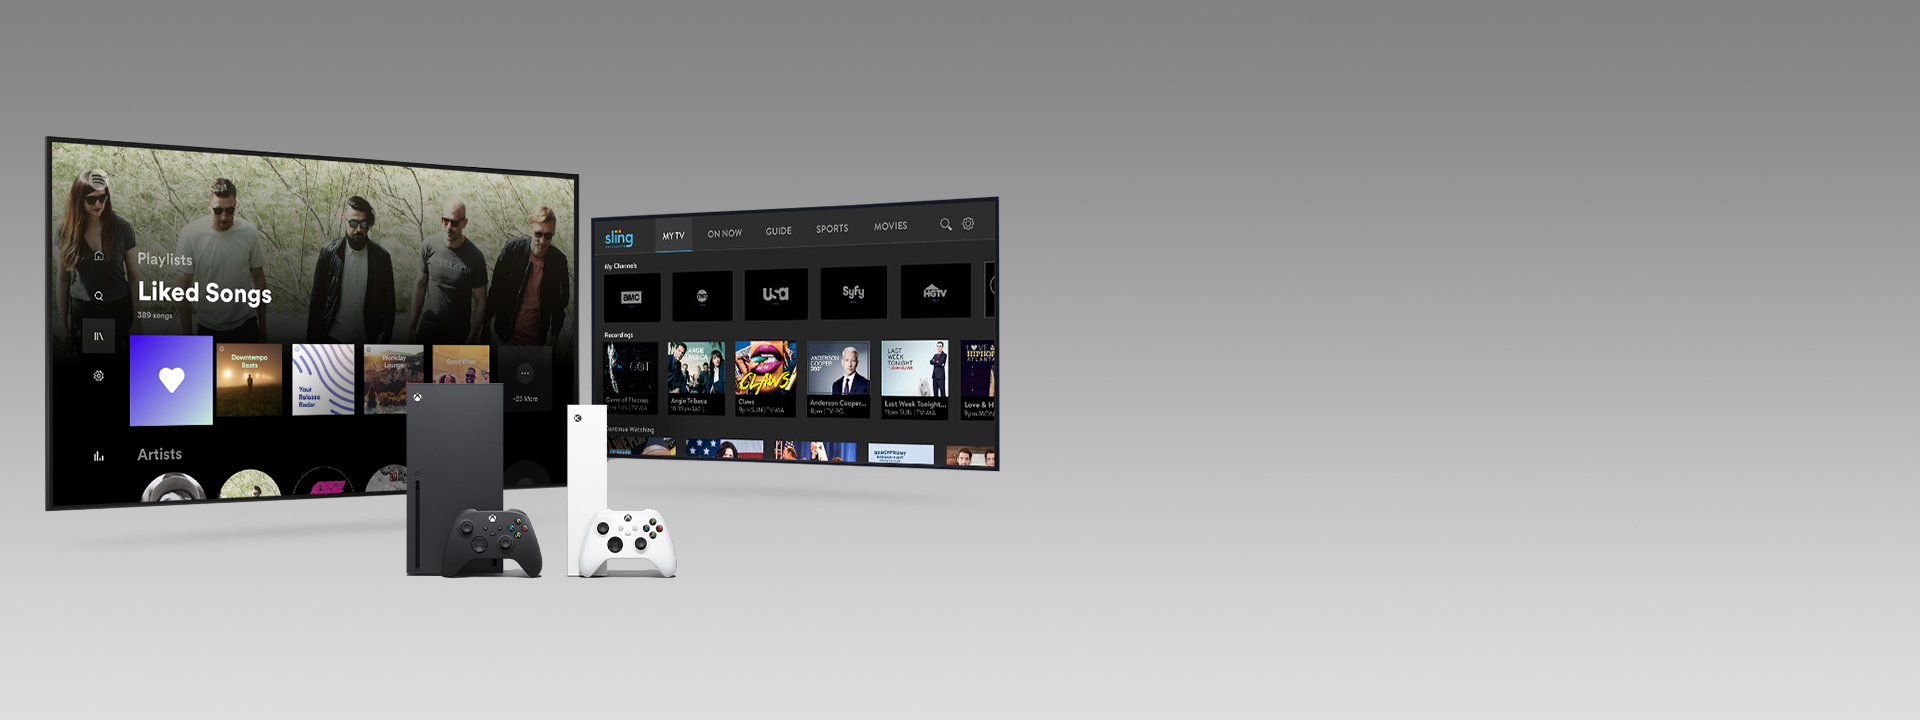 Xbox Series X и Series S с геймпадами перед двумя экранами телевизоров, на которых открыты пользовательские интерфейсы приложений.